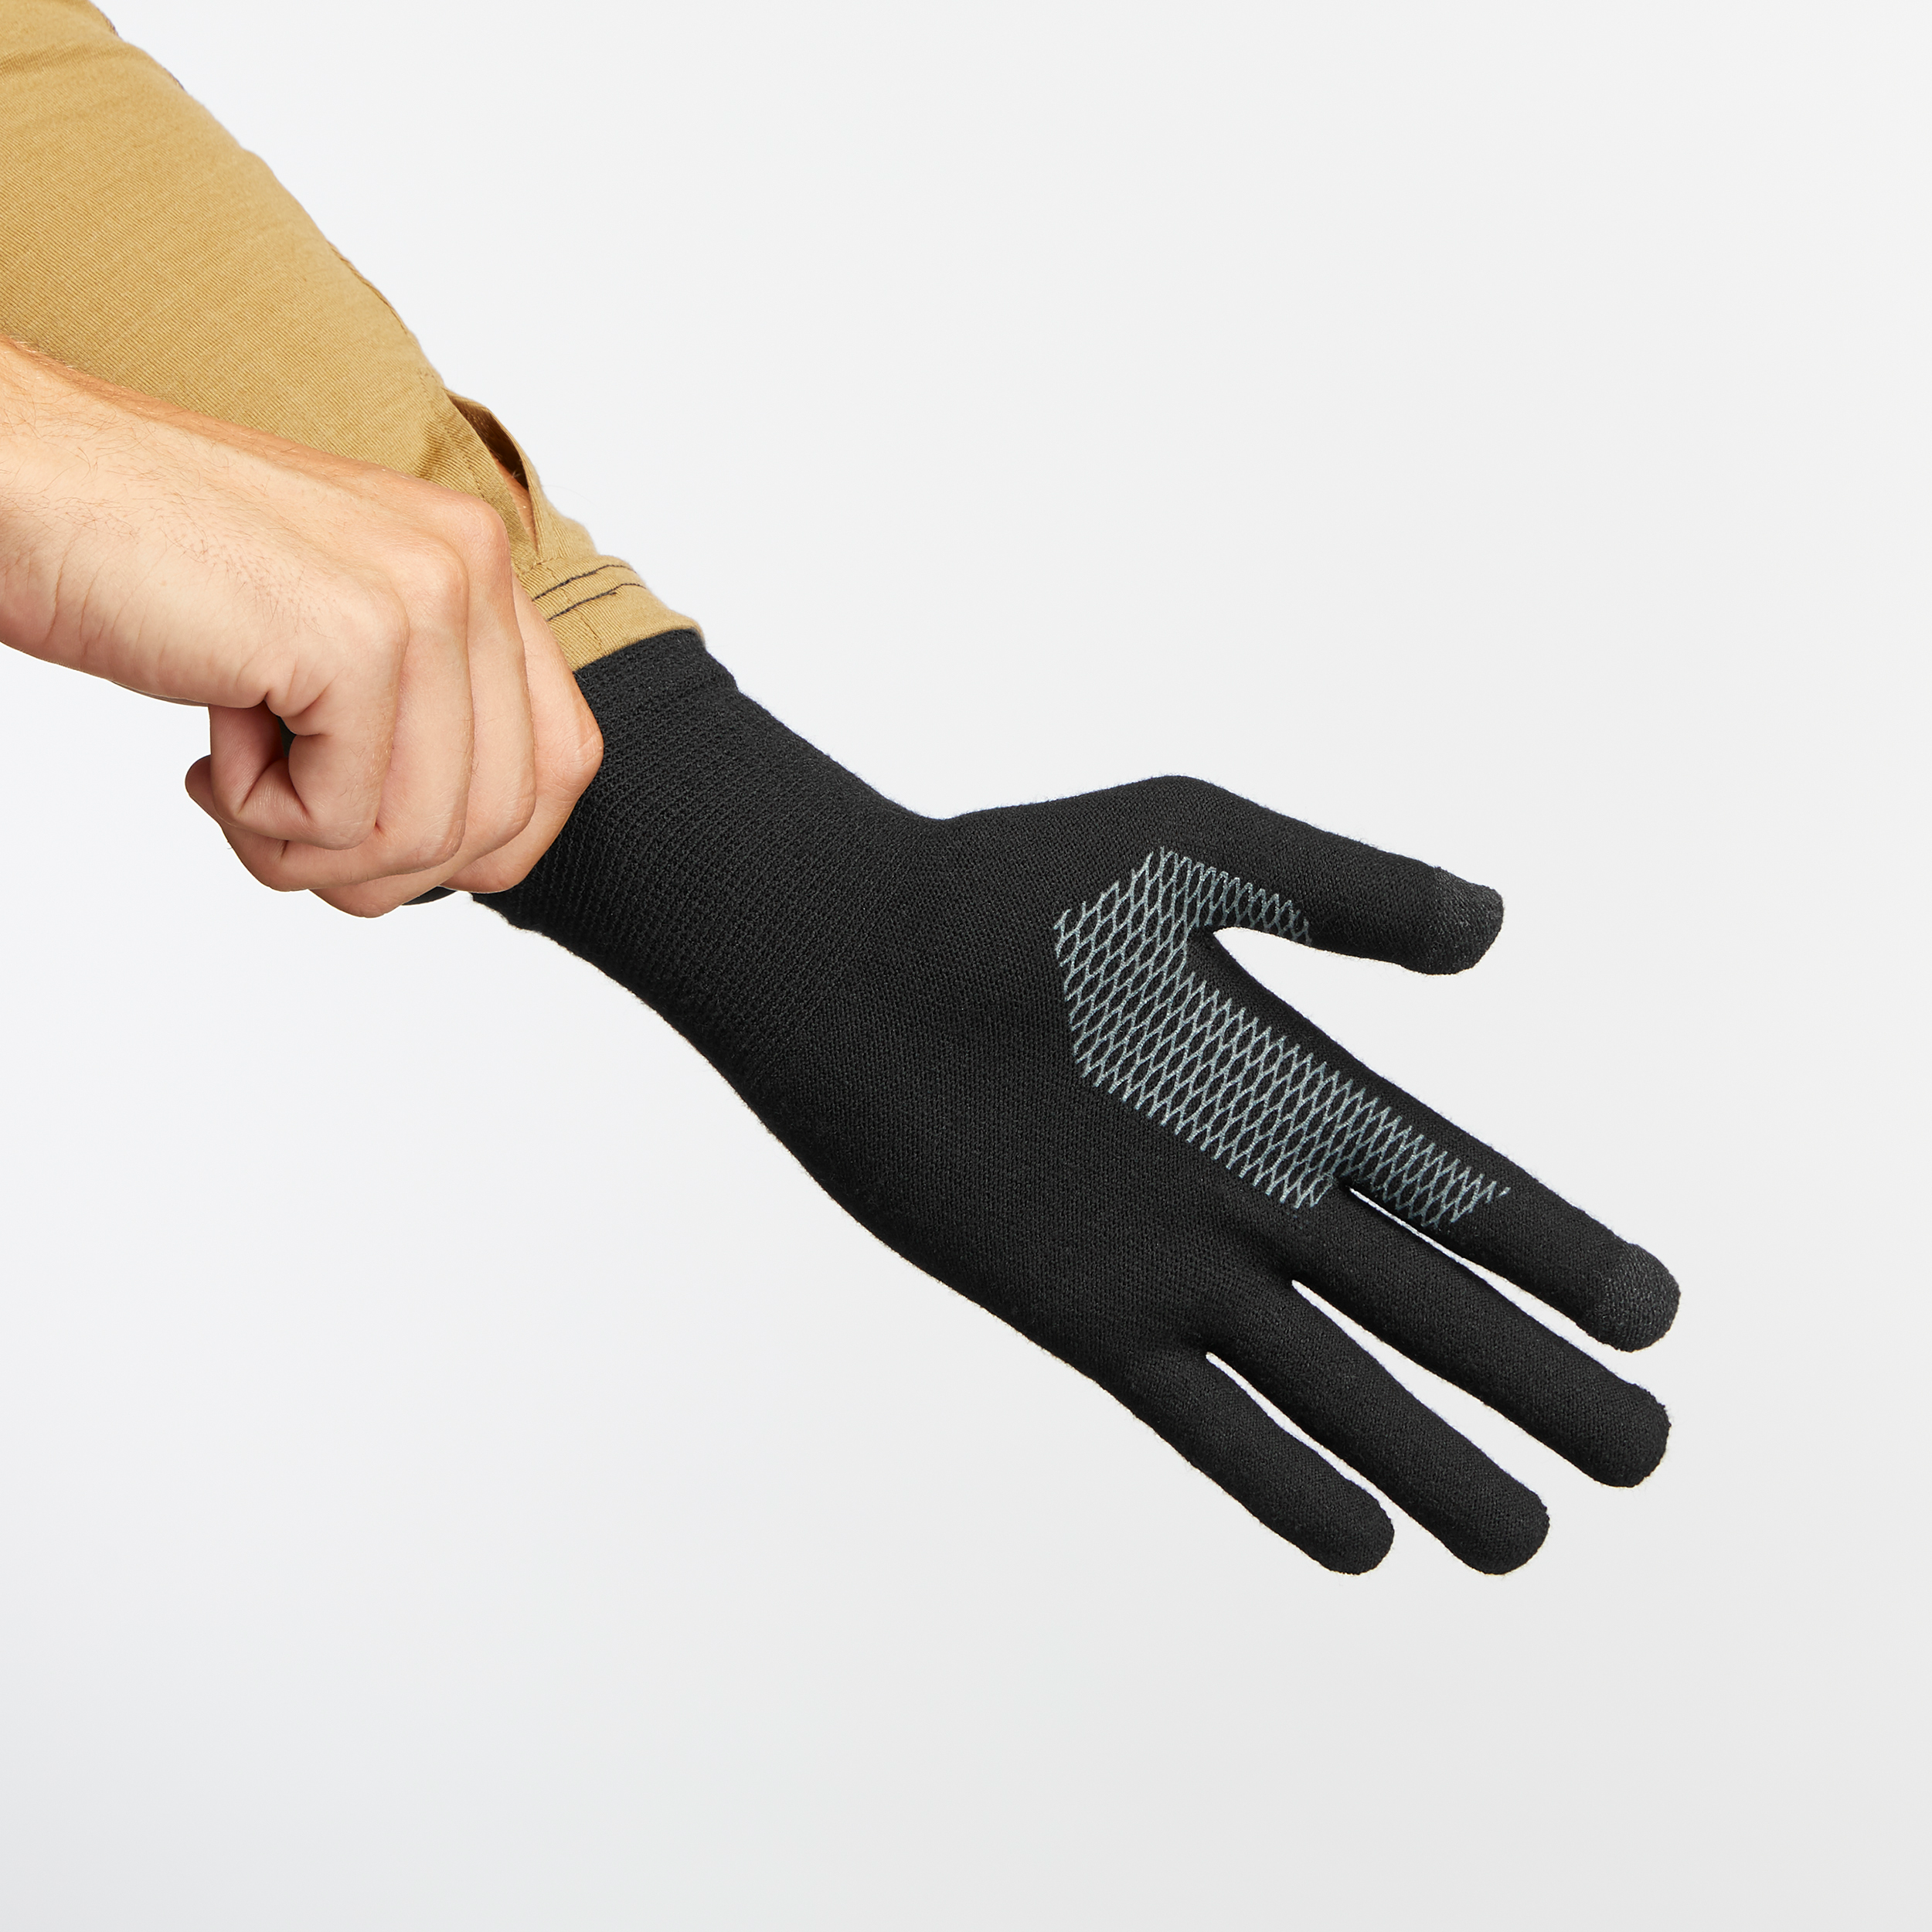 Sous-gants mitaines, Sous-gants, Gants, Protection du travail et  sécurité, Matériel de laboratoire